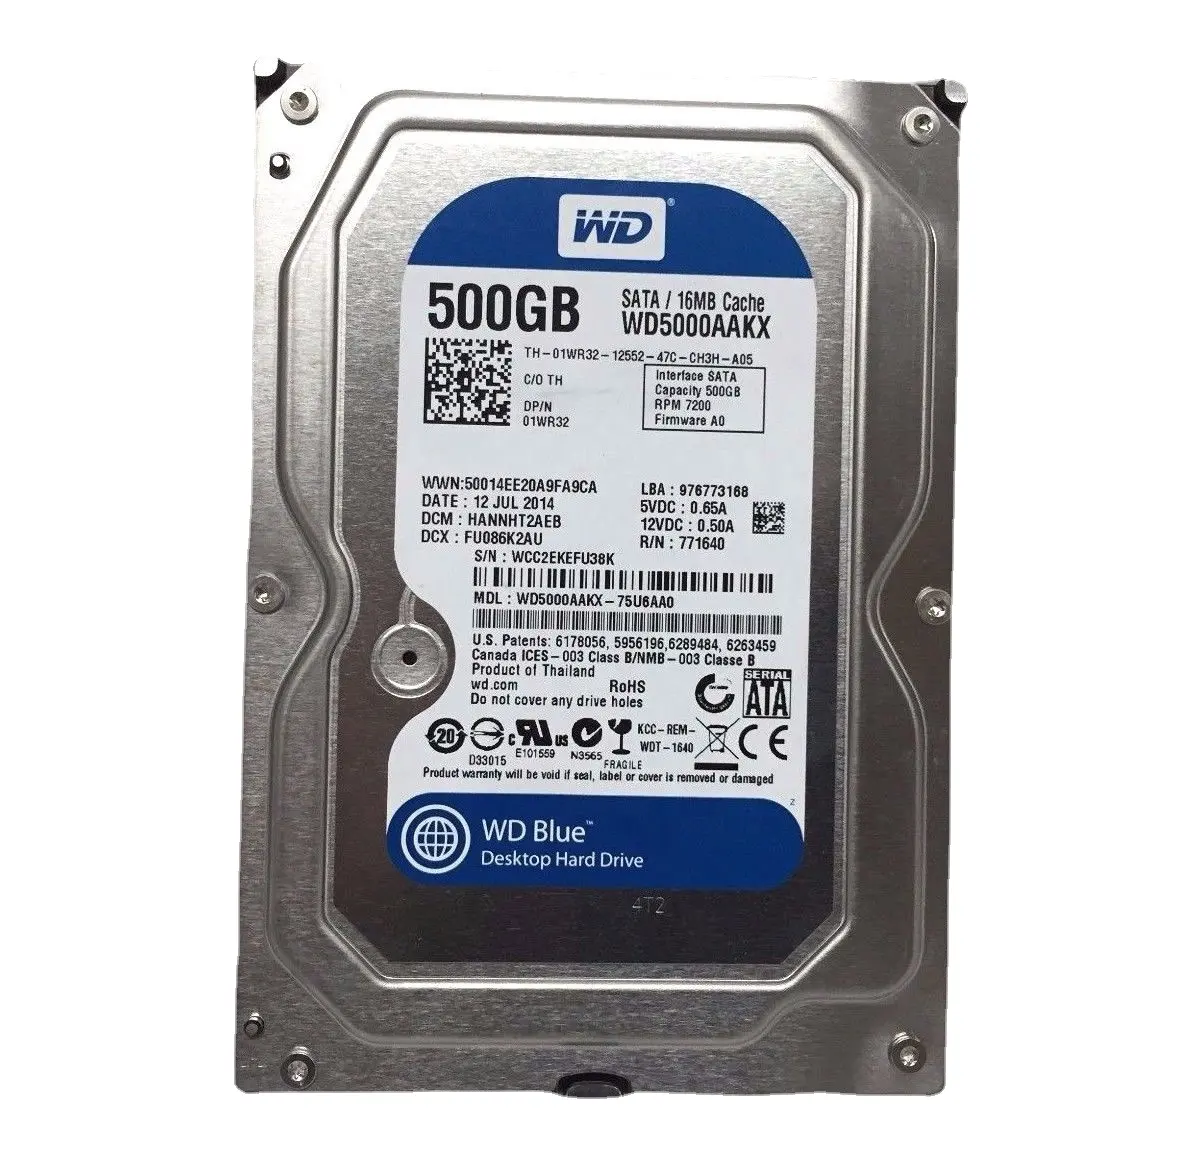 Bản gốc, 500GB màu xanh WD5000AAKX 7200RPM 16Mb Bộ nhớ cache SATA 6gbps 3.5in HDD 01wr32 1